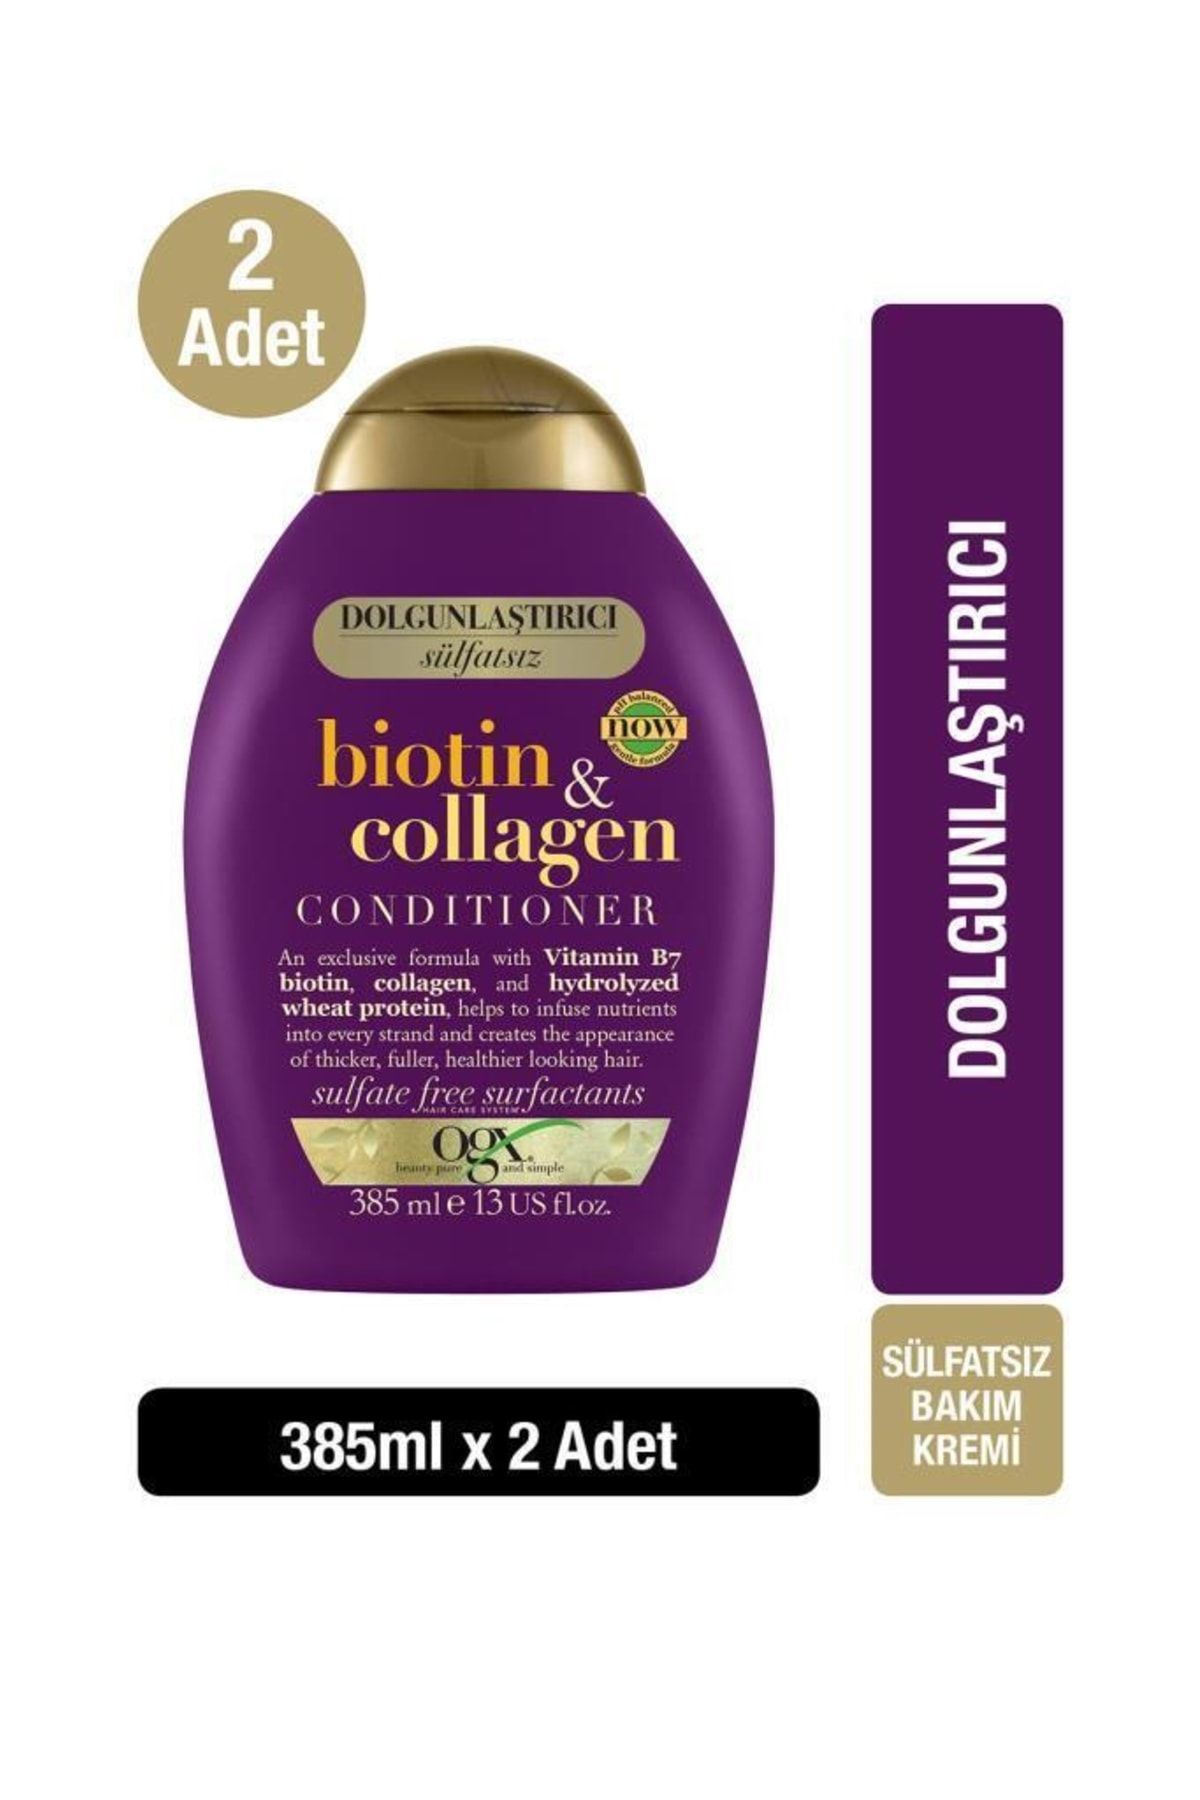 OGX Dolgunlaştırıcı Biotin & Collagen Saç Bakım Kremi 385 ml X 2 Adet